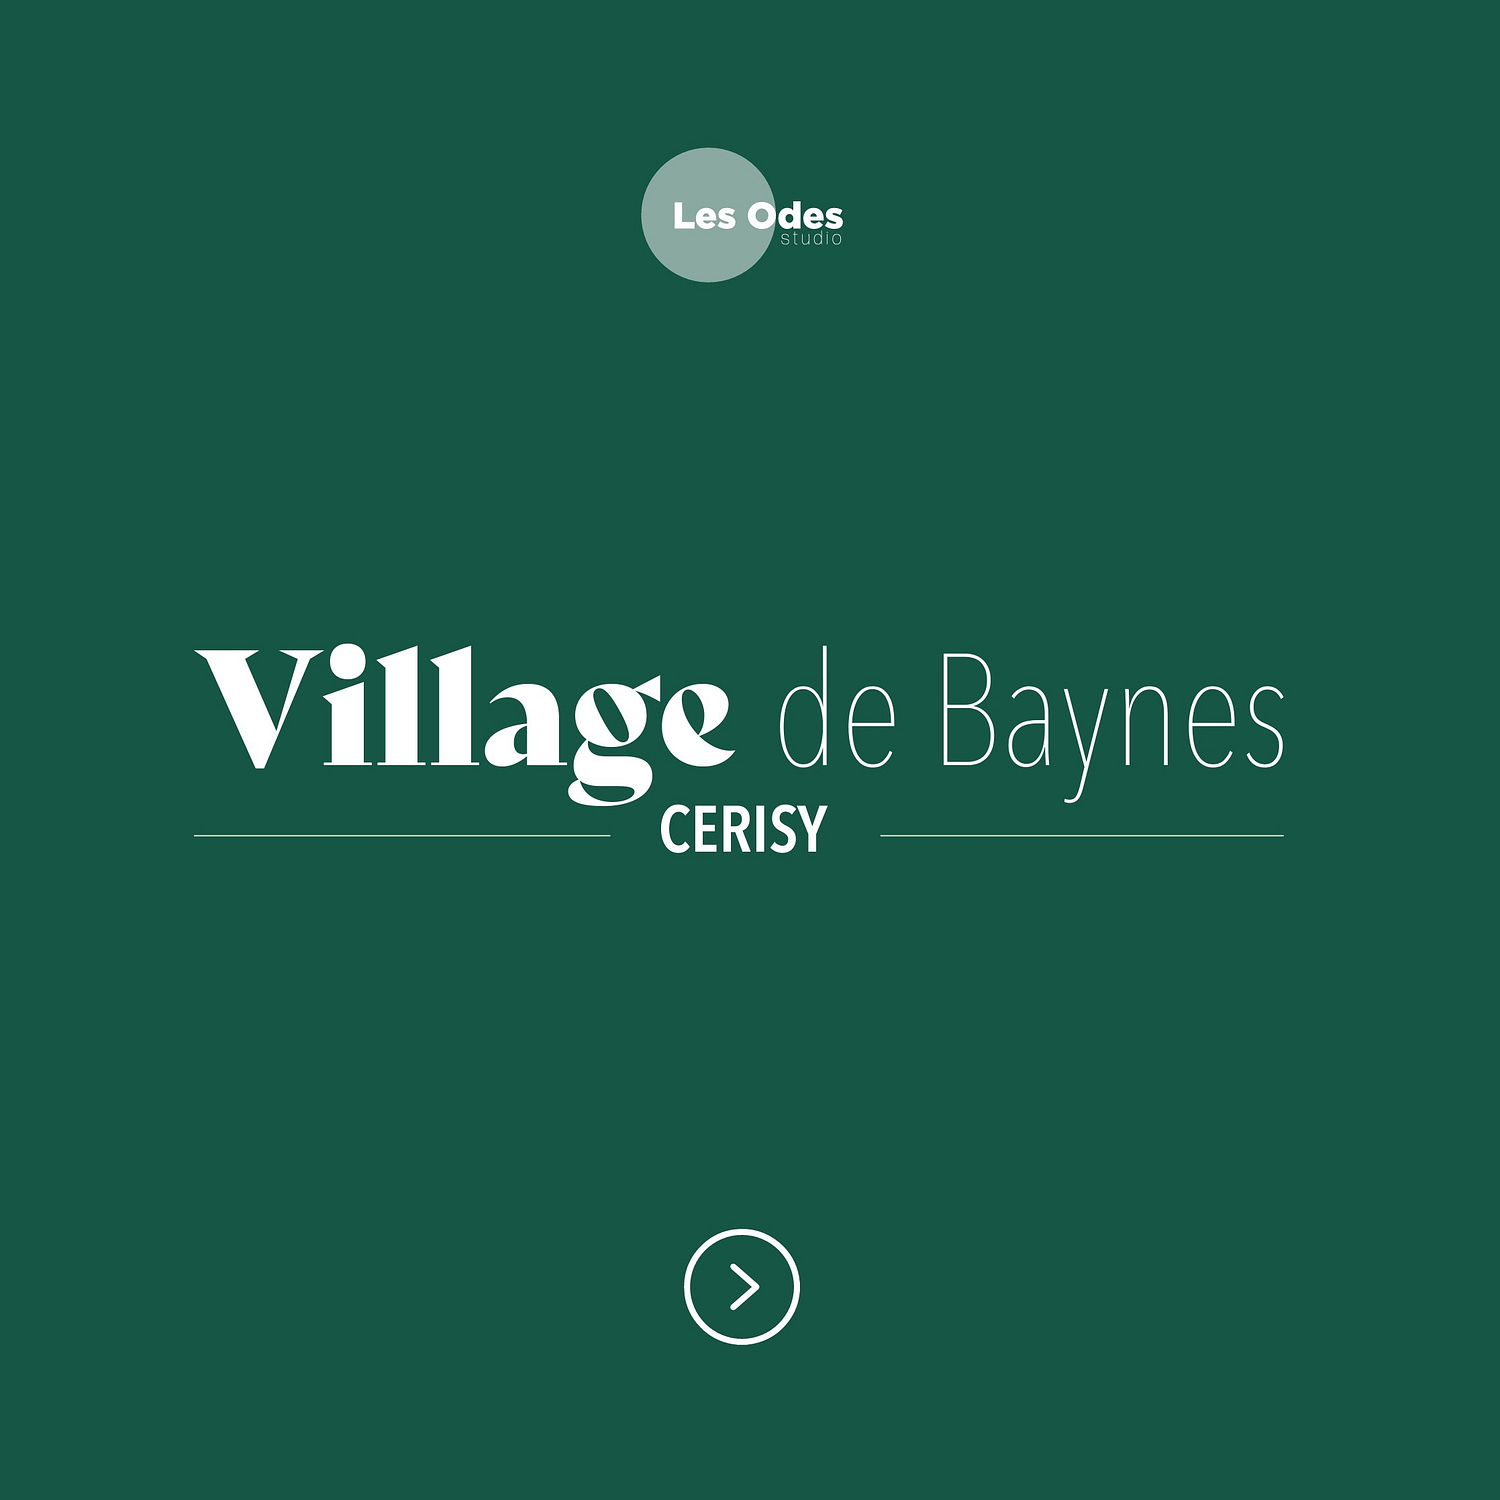 Visuel d'un logo pour un projet d'éco-village dans la Manche, en Normandie